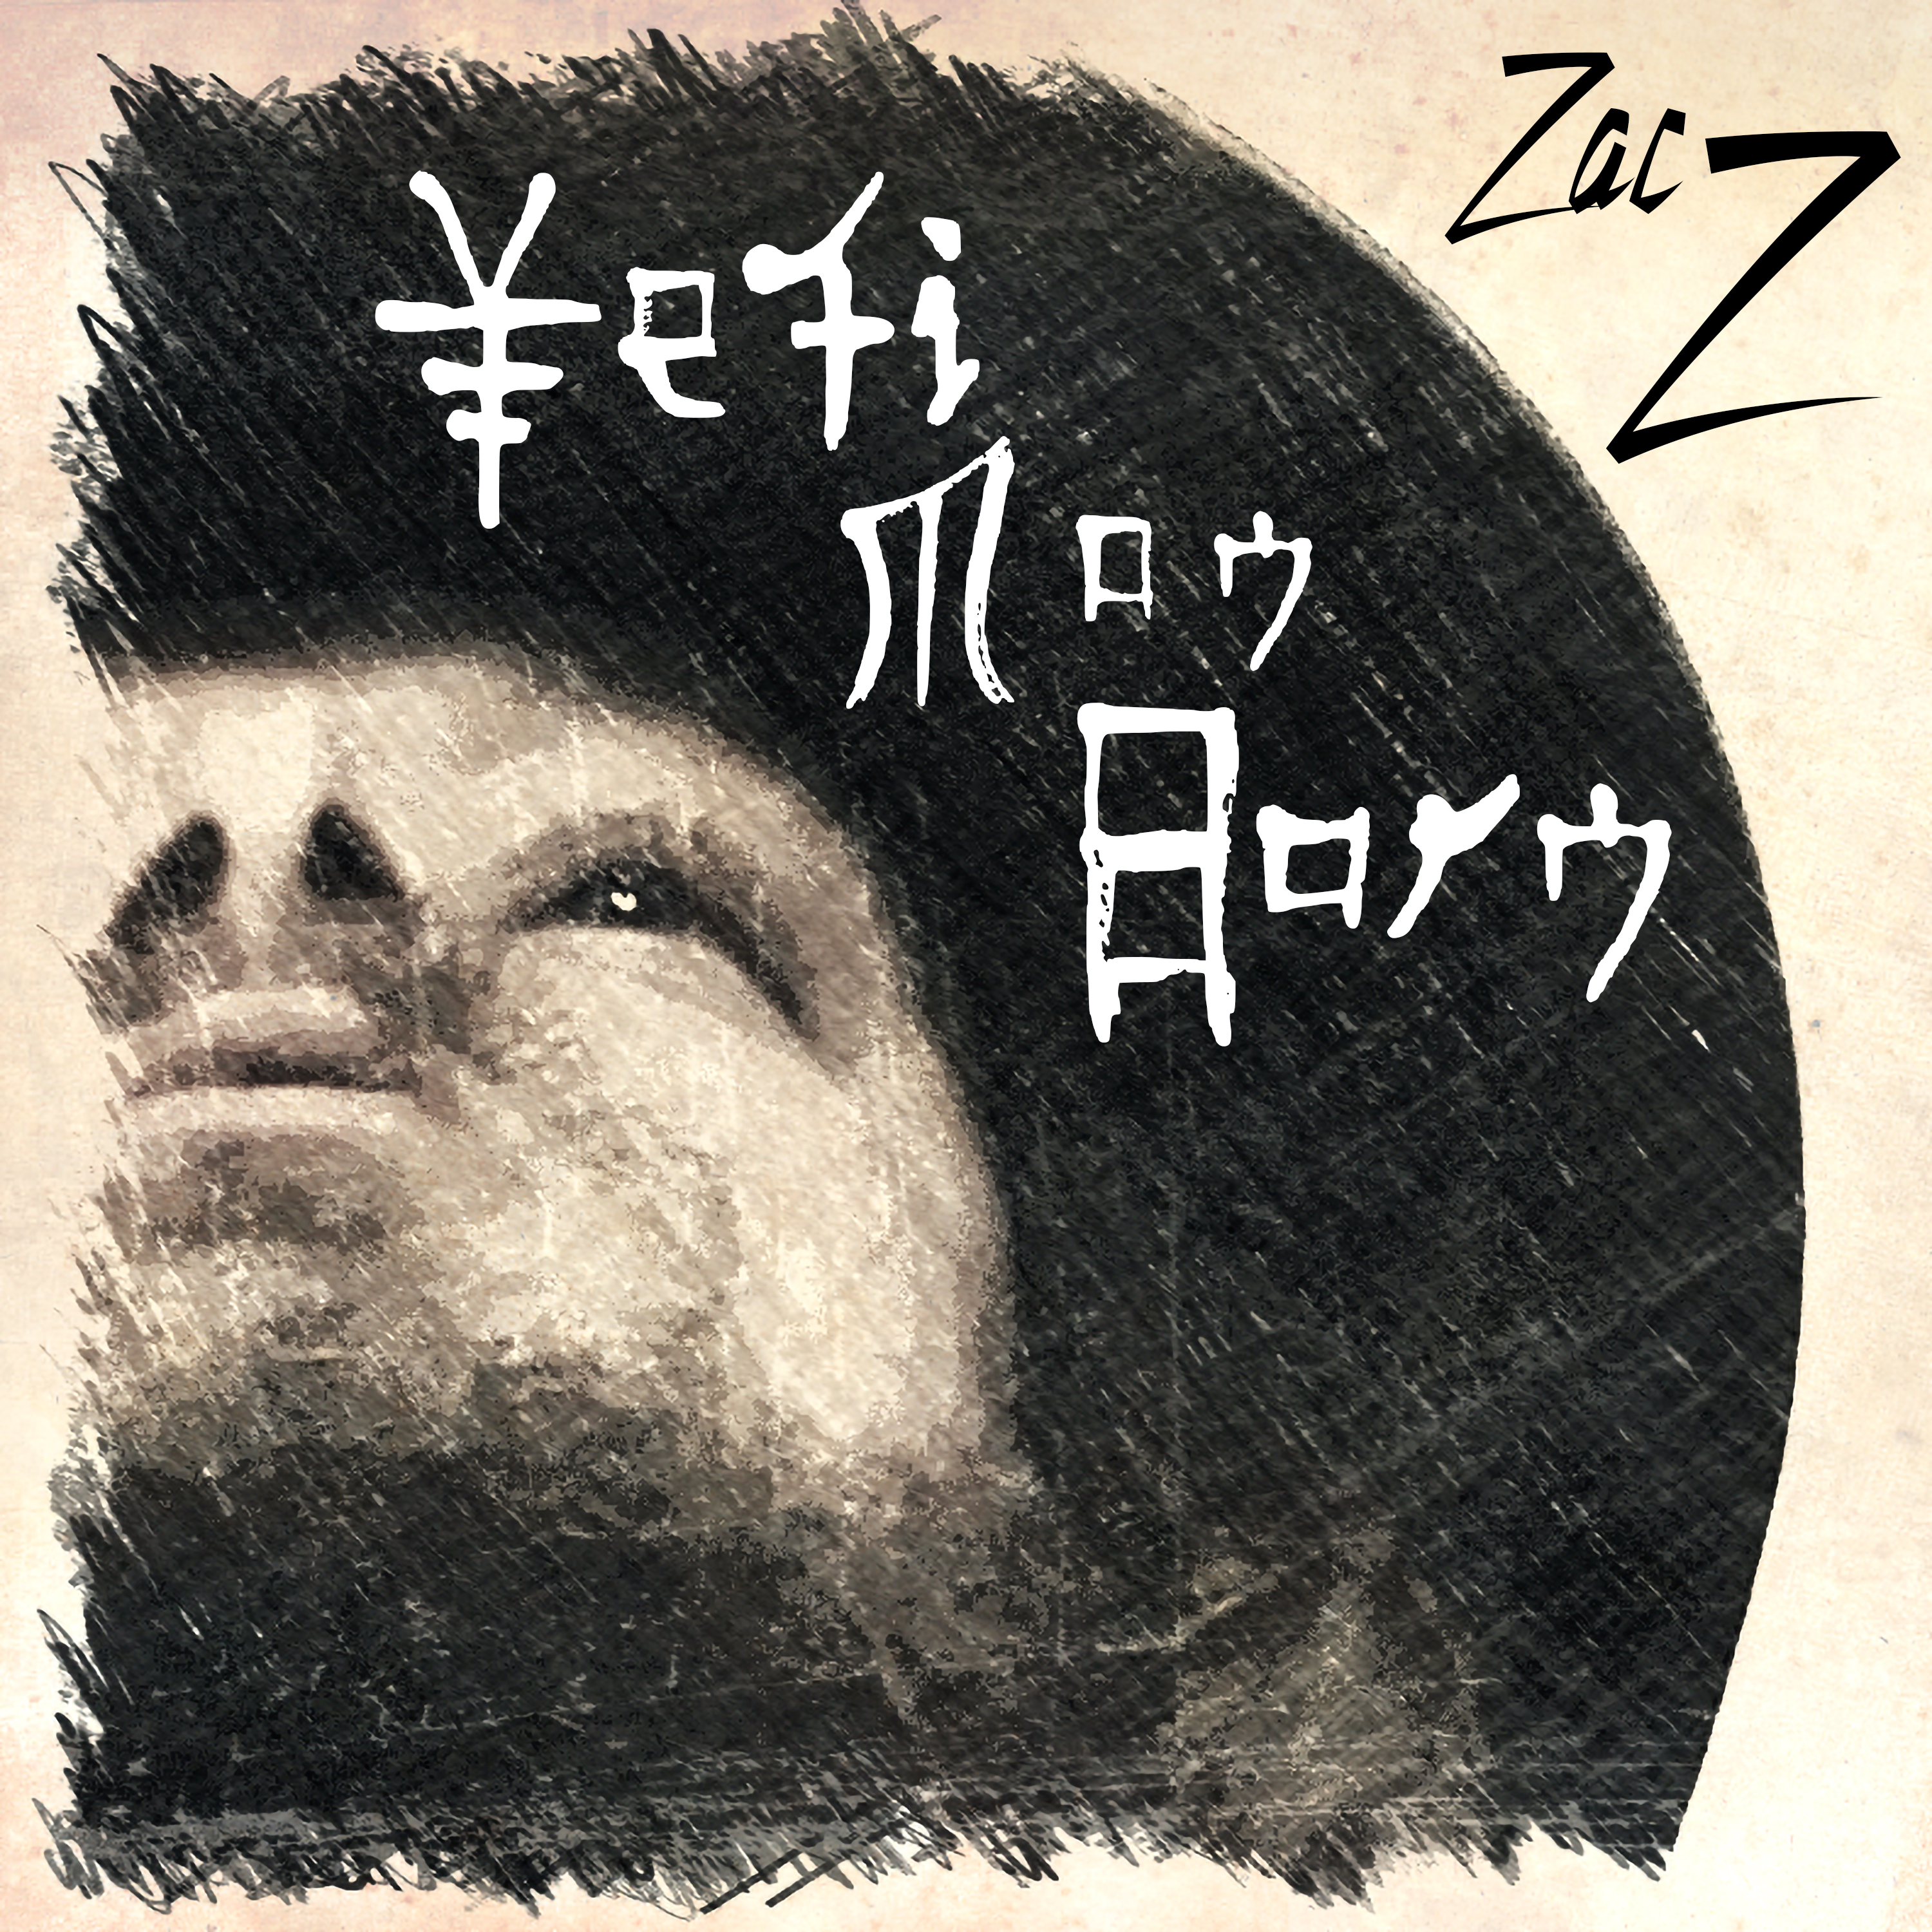 Zac Z – Yeti Man Born